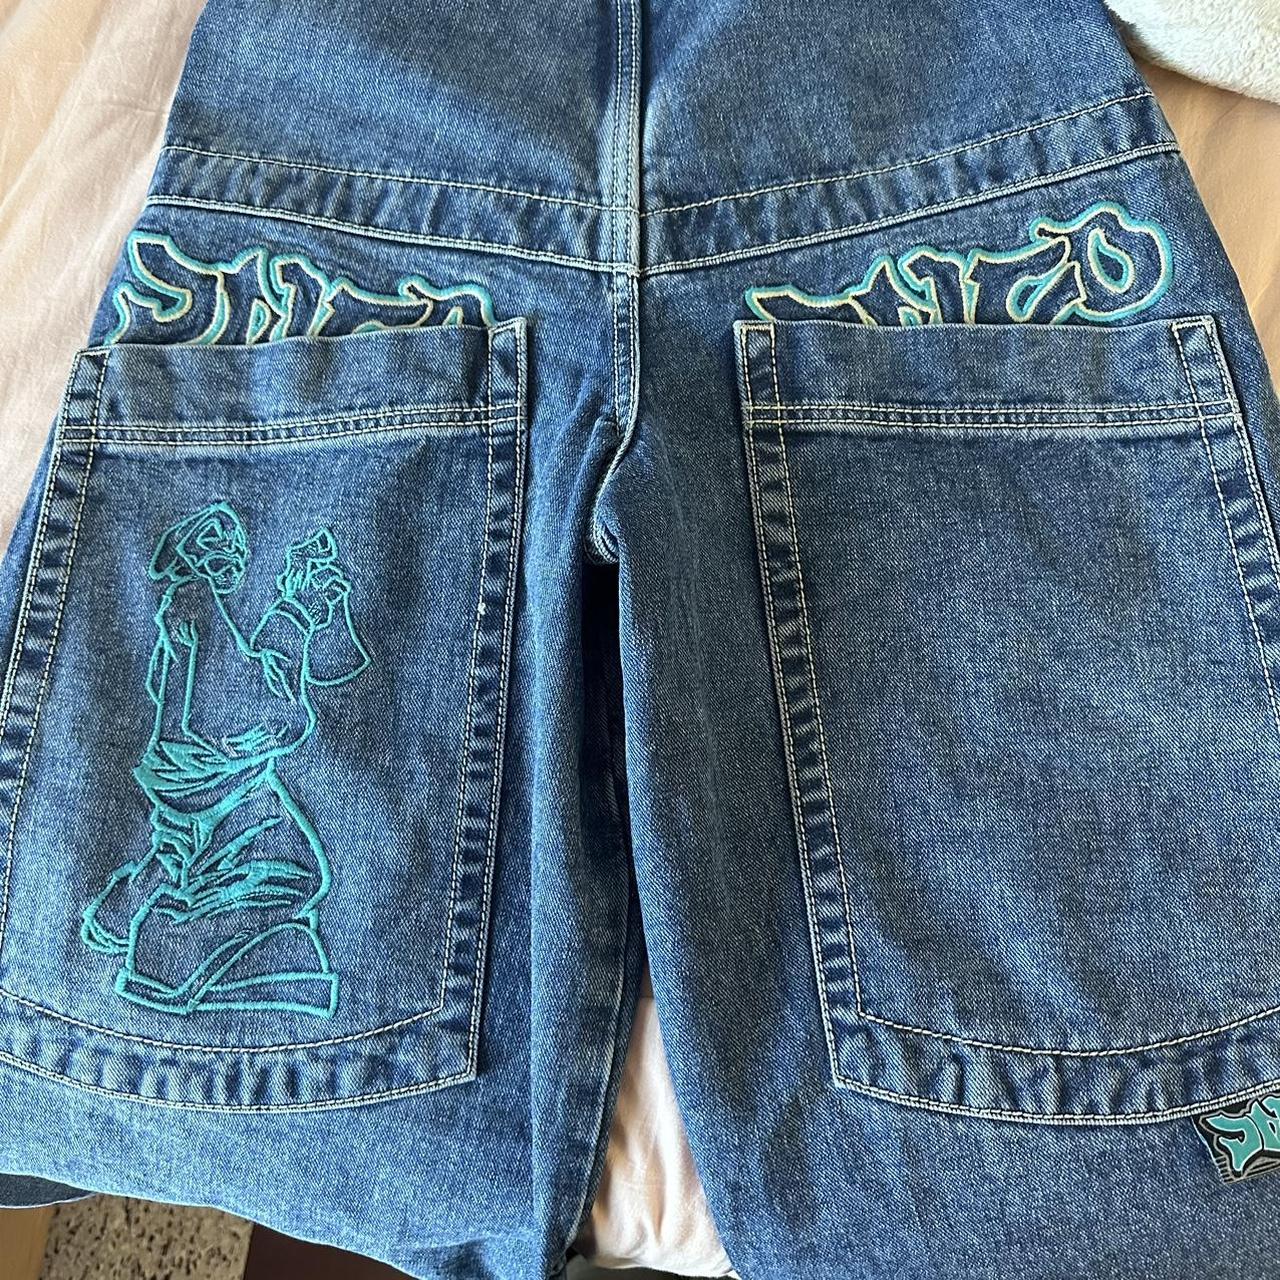 jnco jeans artistical uprising waist 28 brand new,... - Depop